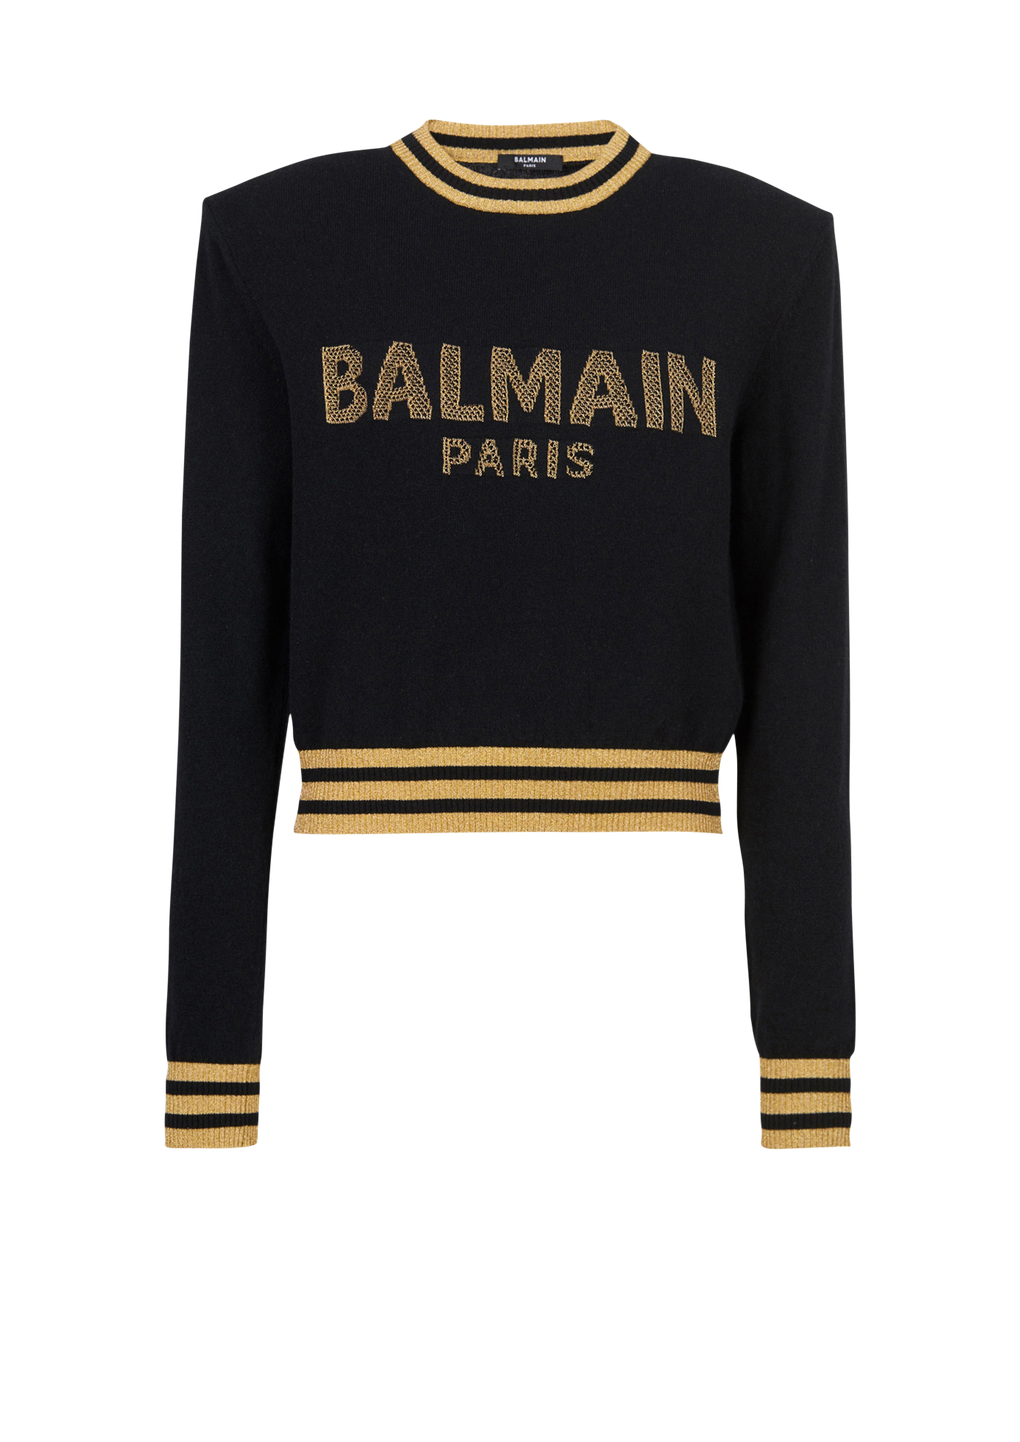 Cropped wool sweatshirt with gold Balmain logo, black, hi-res